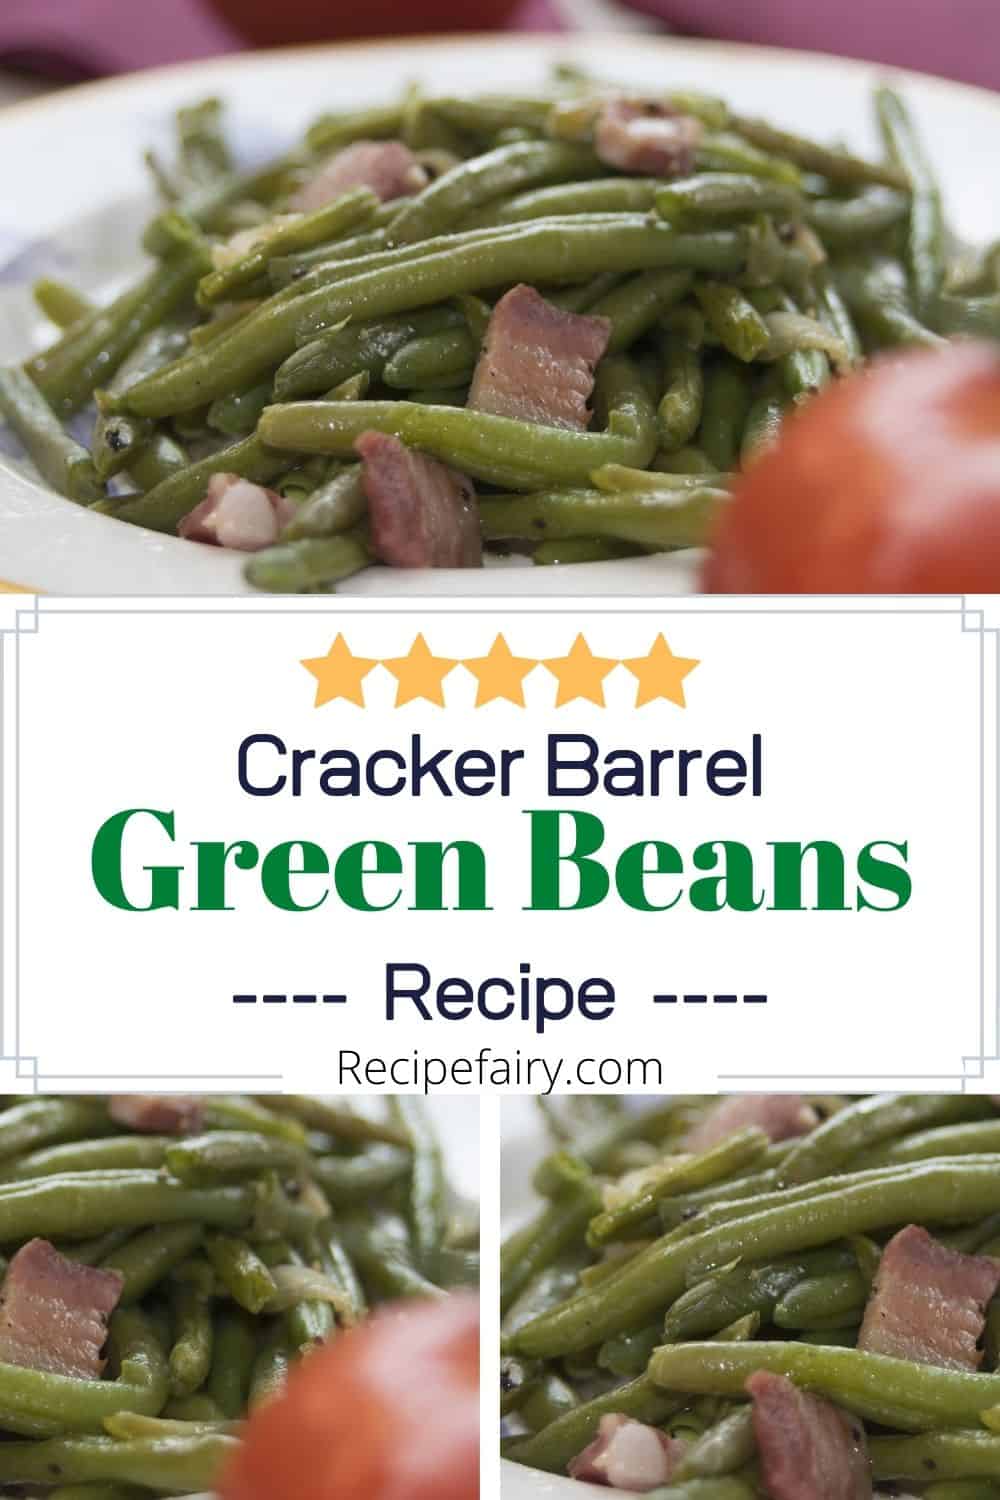 Cracker Barrel Green Beans Recipe » Recipefairy.com